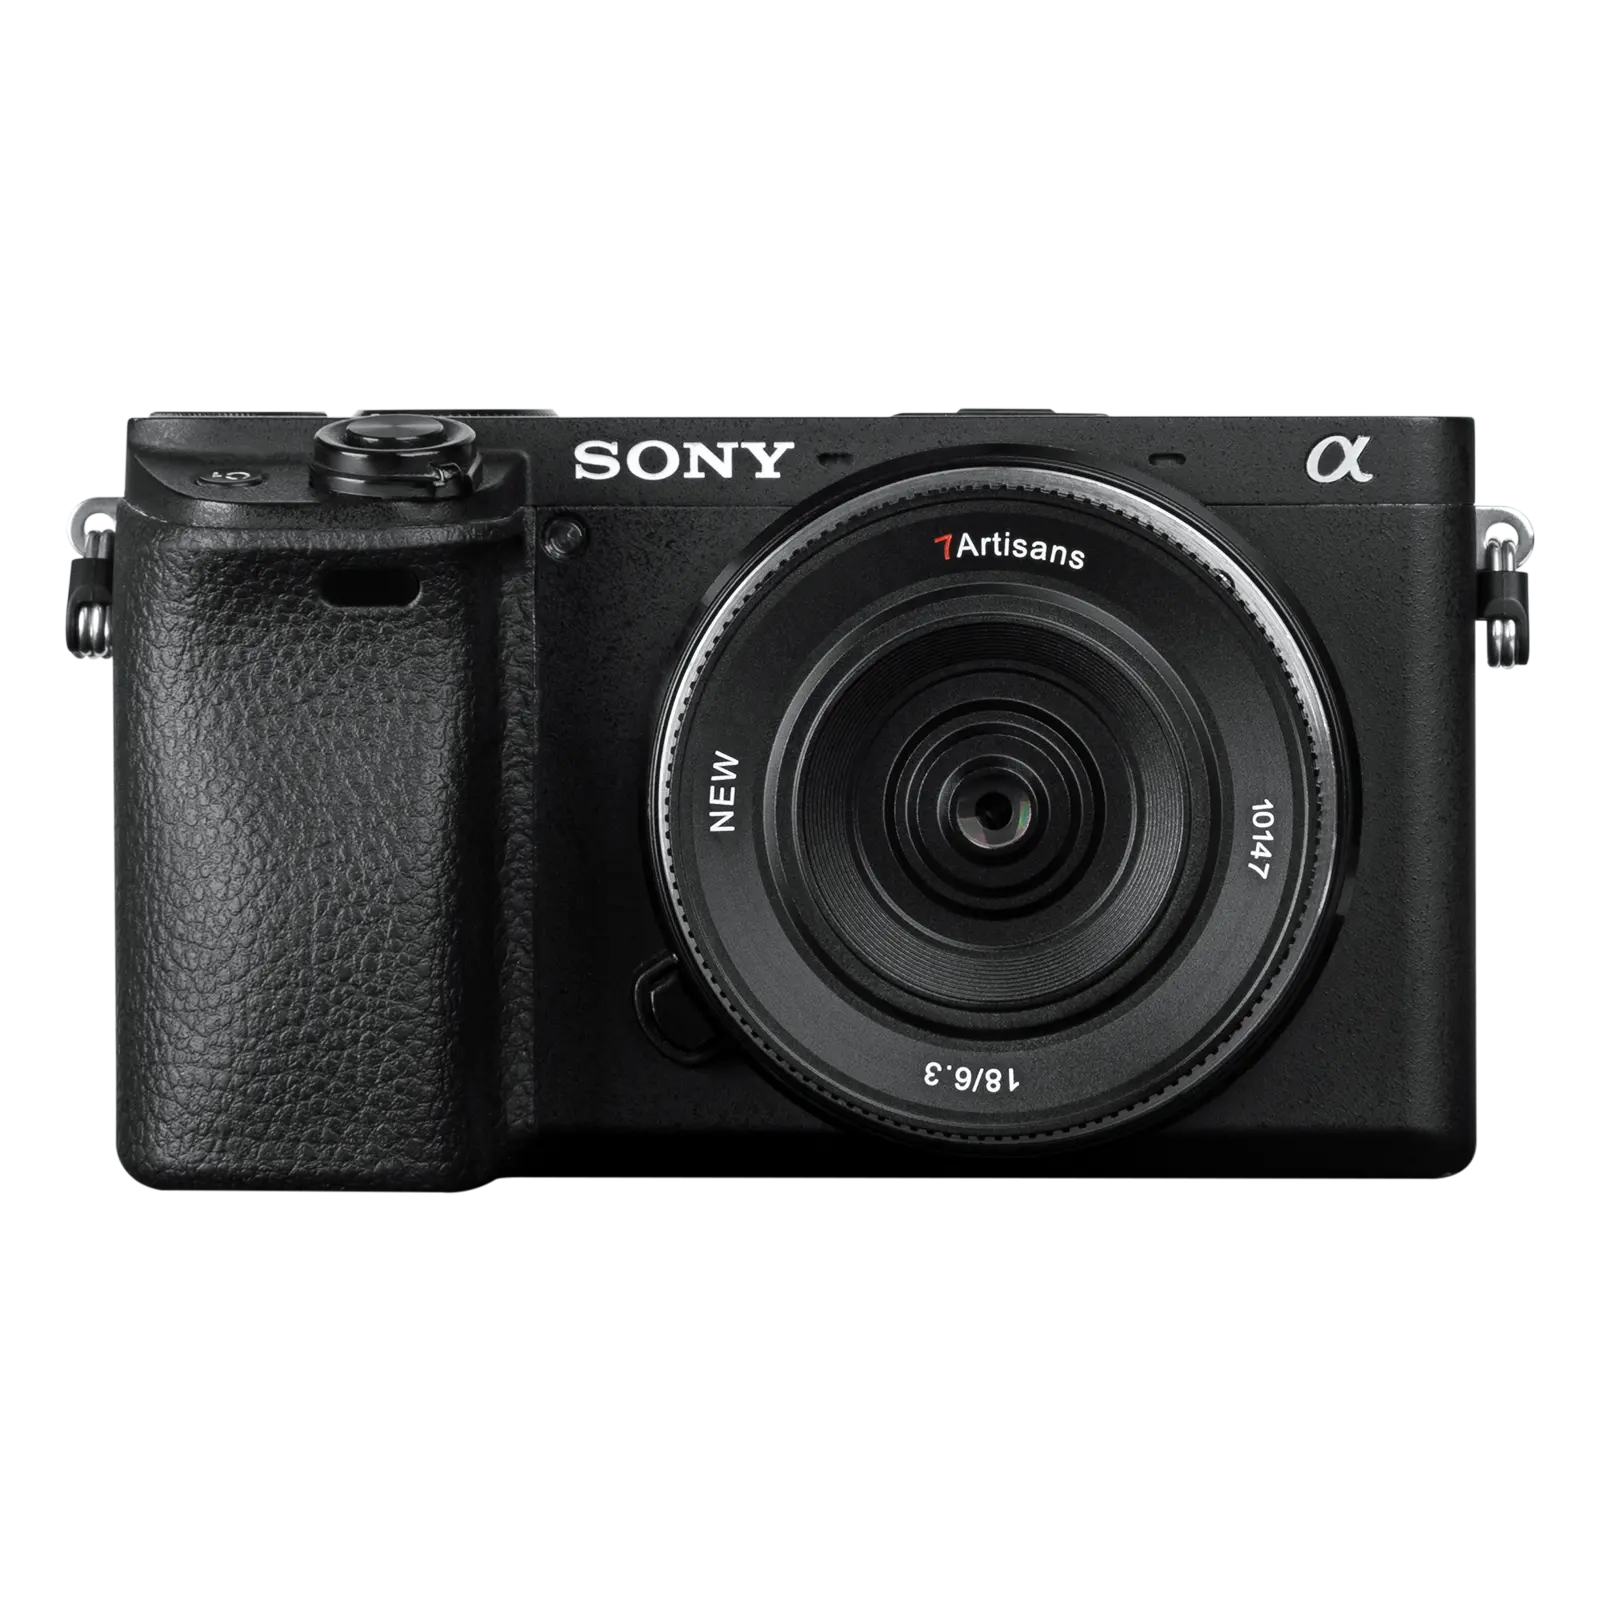 7Artisans 18mmF6.3II Kamerazubehör Objektiv für Sony E, Canon EOS-M, Fuji FX, Nikon Z, M43 Kameras mit überlegener Bildqualität